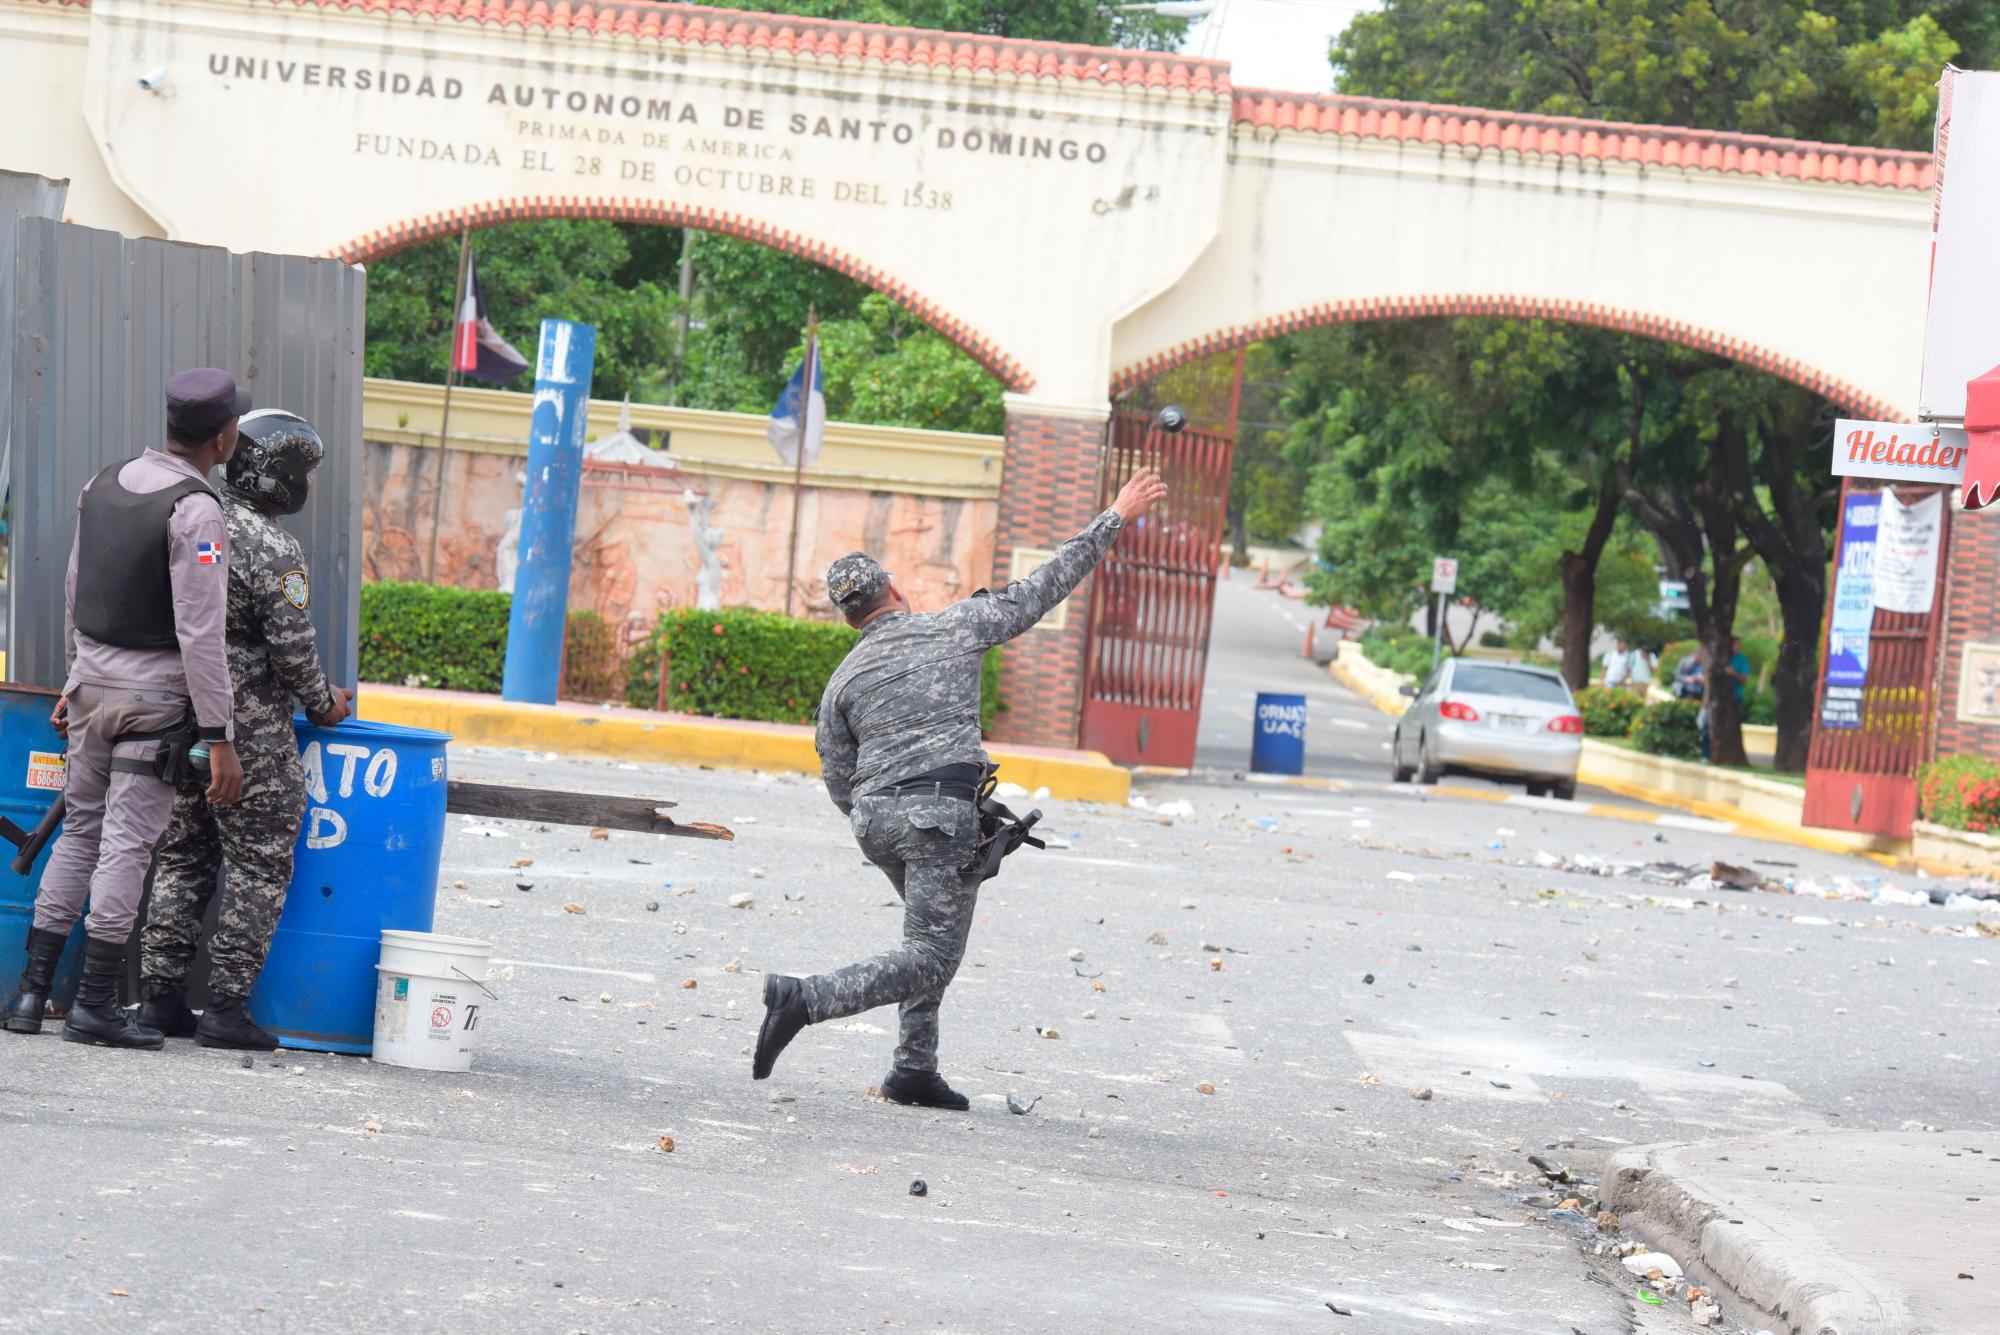 Un policia arroja una bomba lacrimógena en frente a una de las puerta de entrada a la UASD, el día 8 de octubre de 2018.